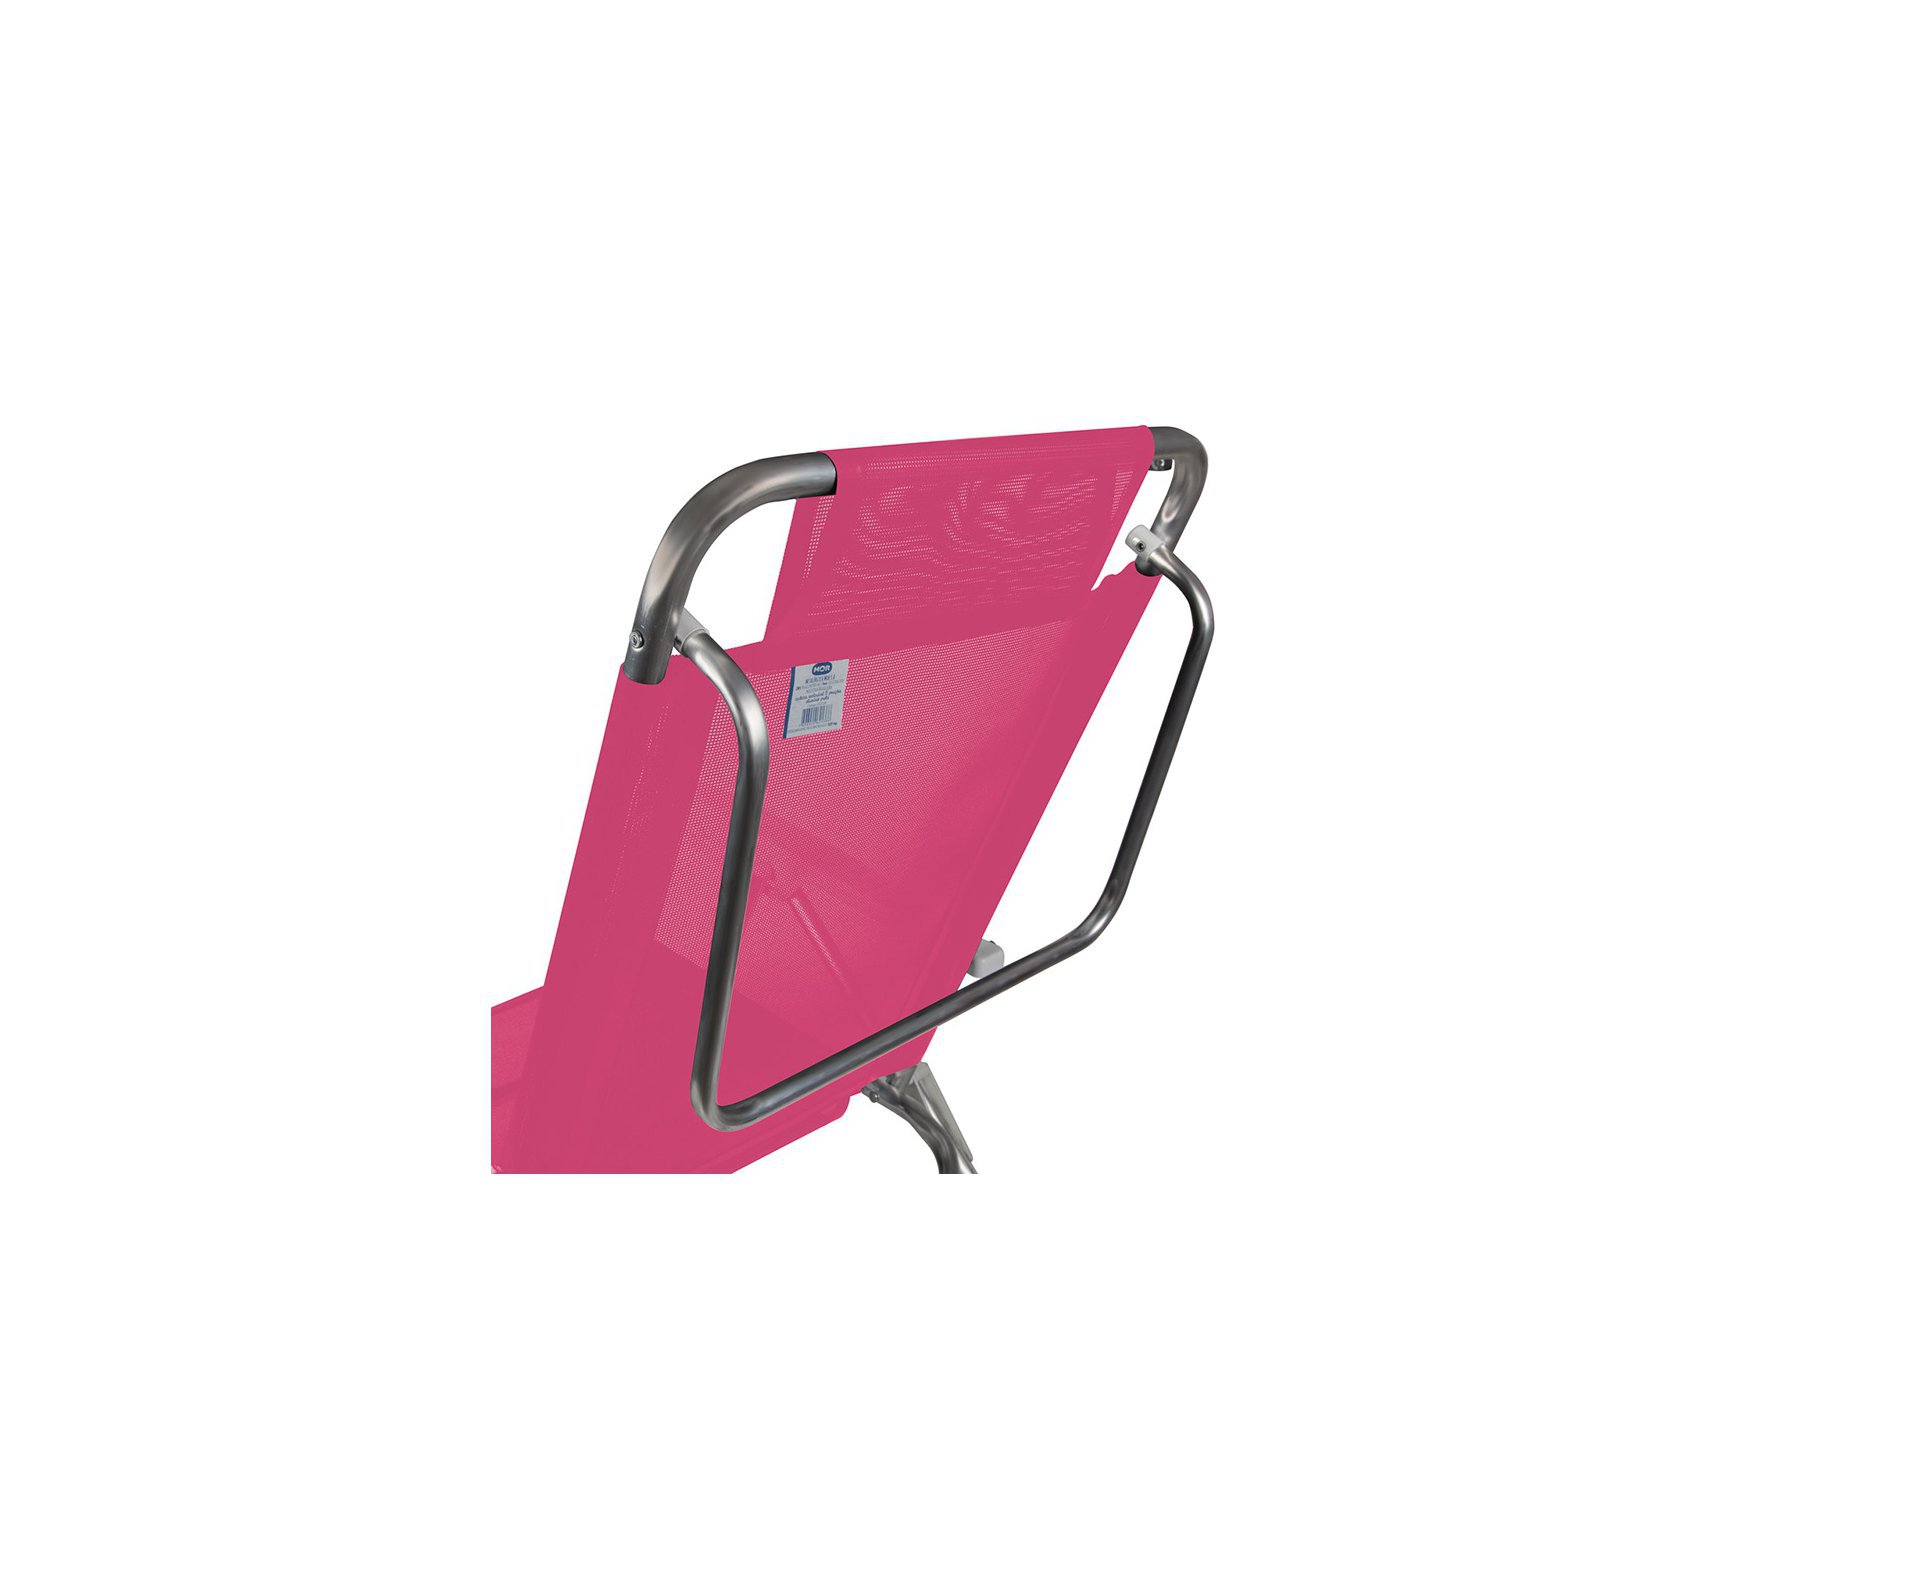 Cadeira Reclinável De Praia Alumínio Mor Fashion - Rosa